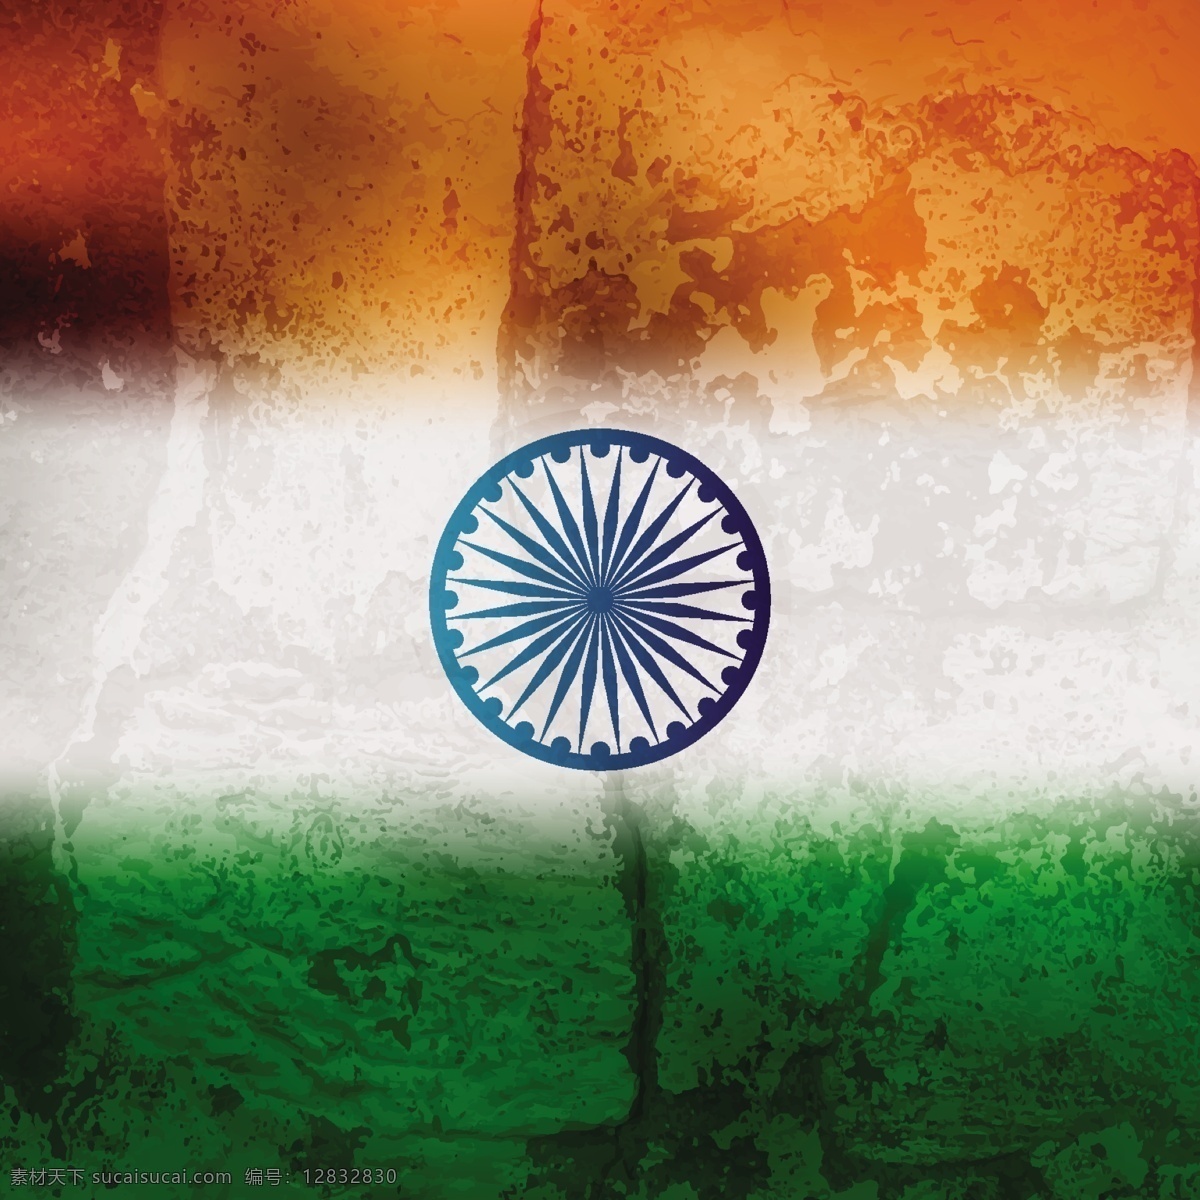 印度 国旗 油渍 纹理 背景 抽象 节日 假日 车轮 的下